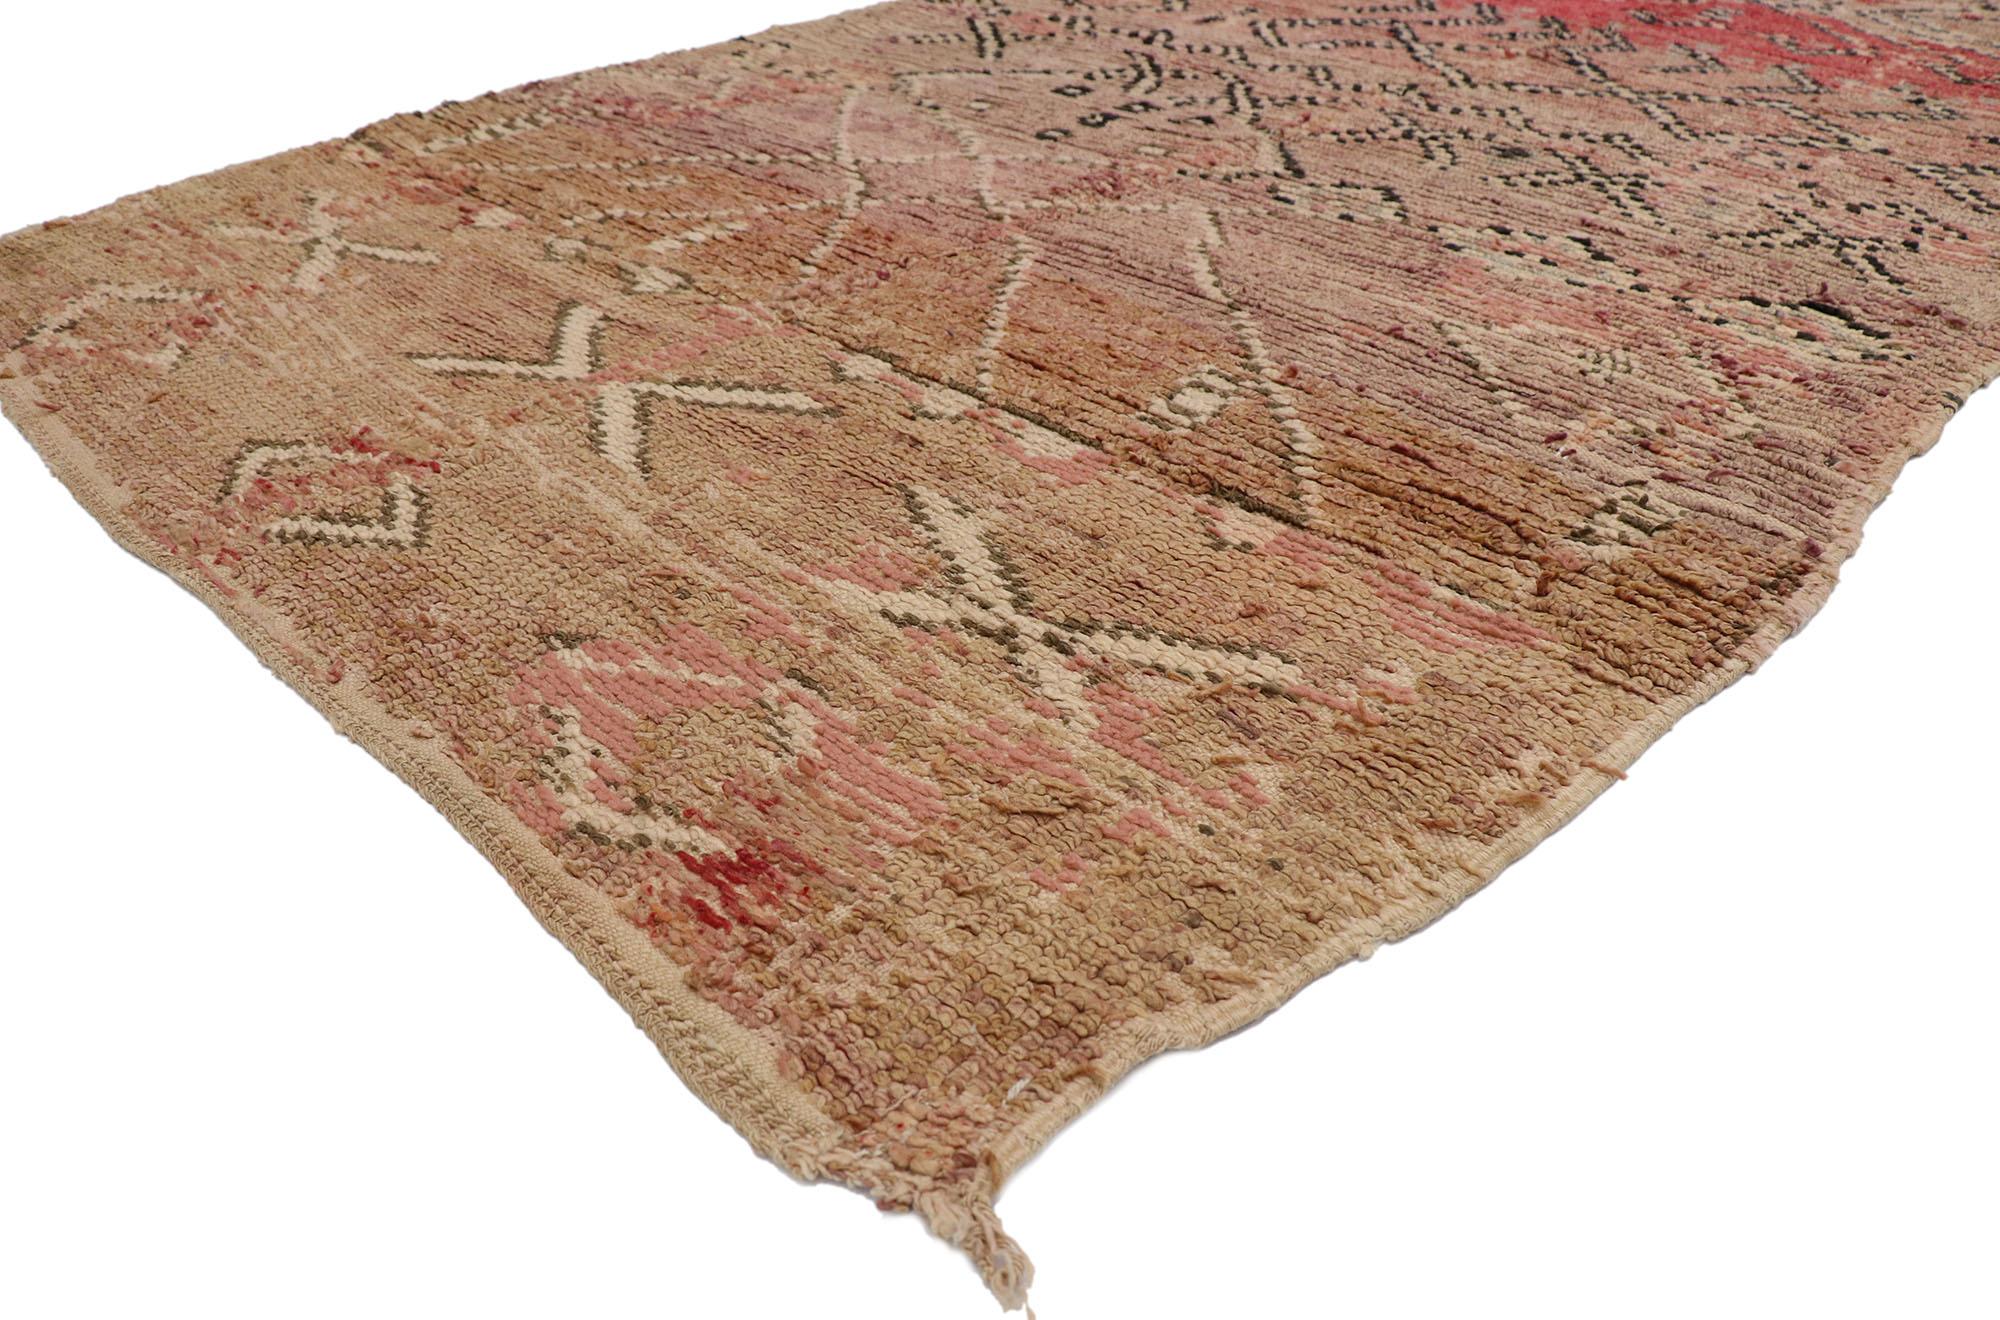 21423 Marokkanischer Vintage-Teppich, 05'06 x 09'03.
Wabi-Sabi trifft auf rustikalen Charme in diesem handgeknüpften marokkanischen Wollteppich im Vintage-Stil. Das charakteristische Tribal-Muster und die sonnengebräunten Erdtöne, die in dieses